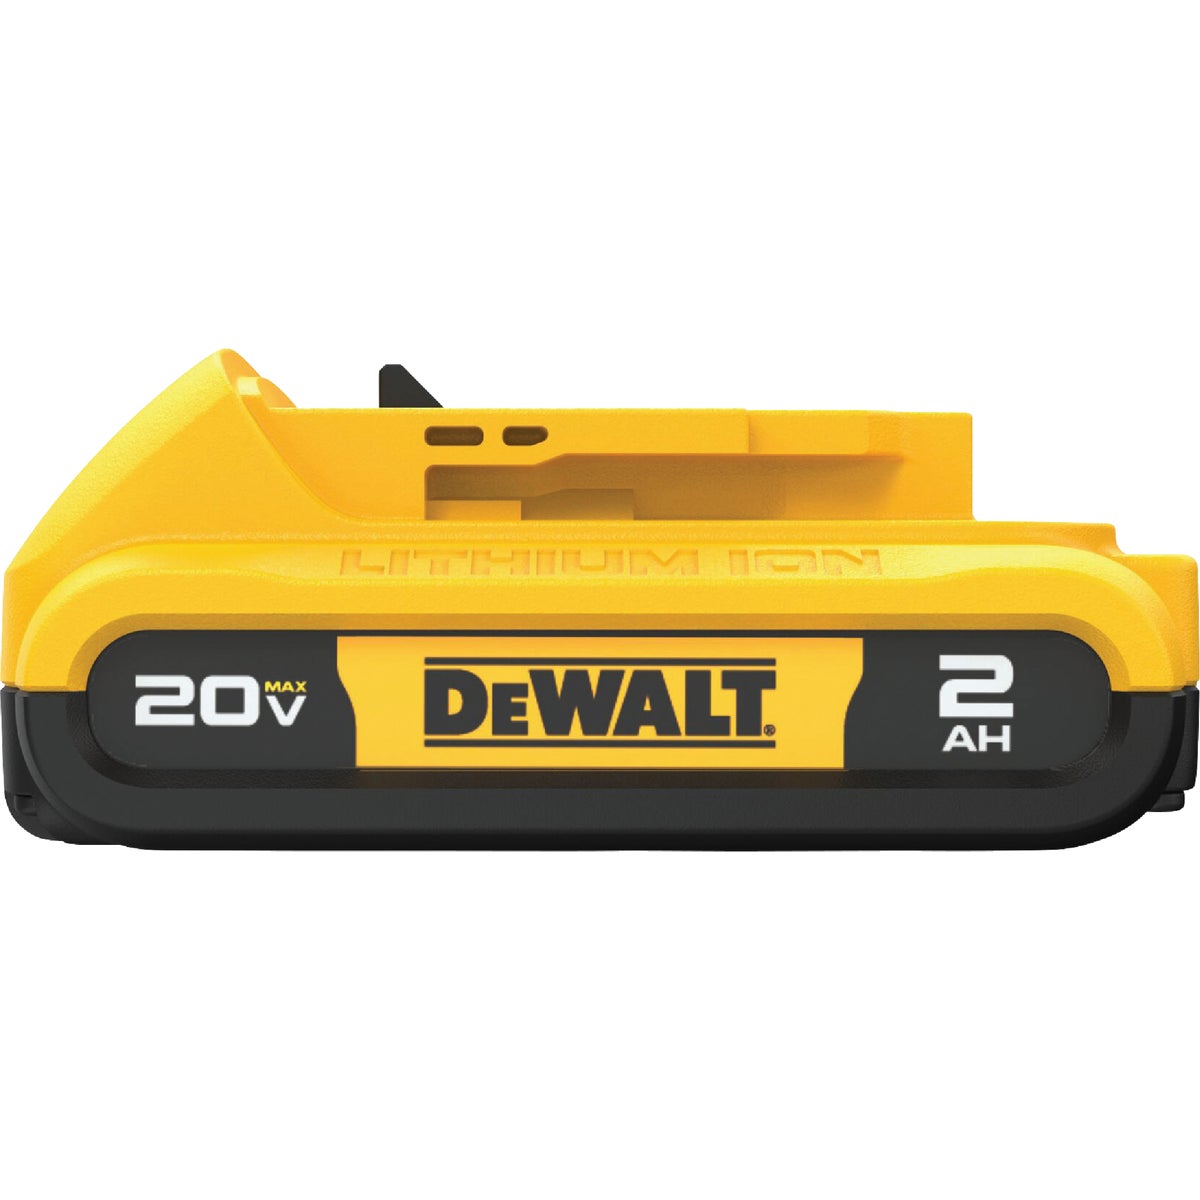 DEWALT 20 Volt MAX Lithium-Ion 2.0 Ah Compact Tool Battery